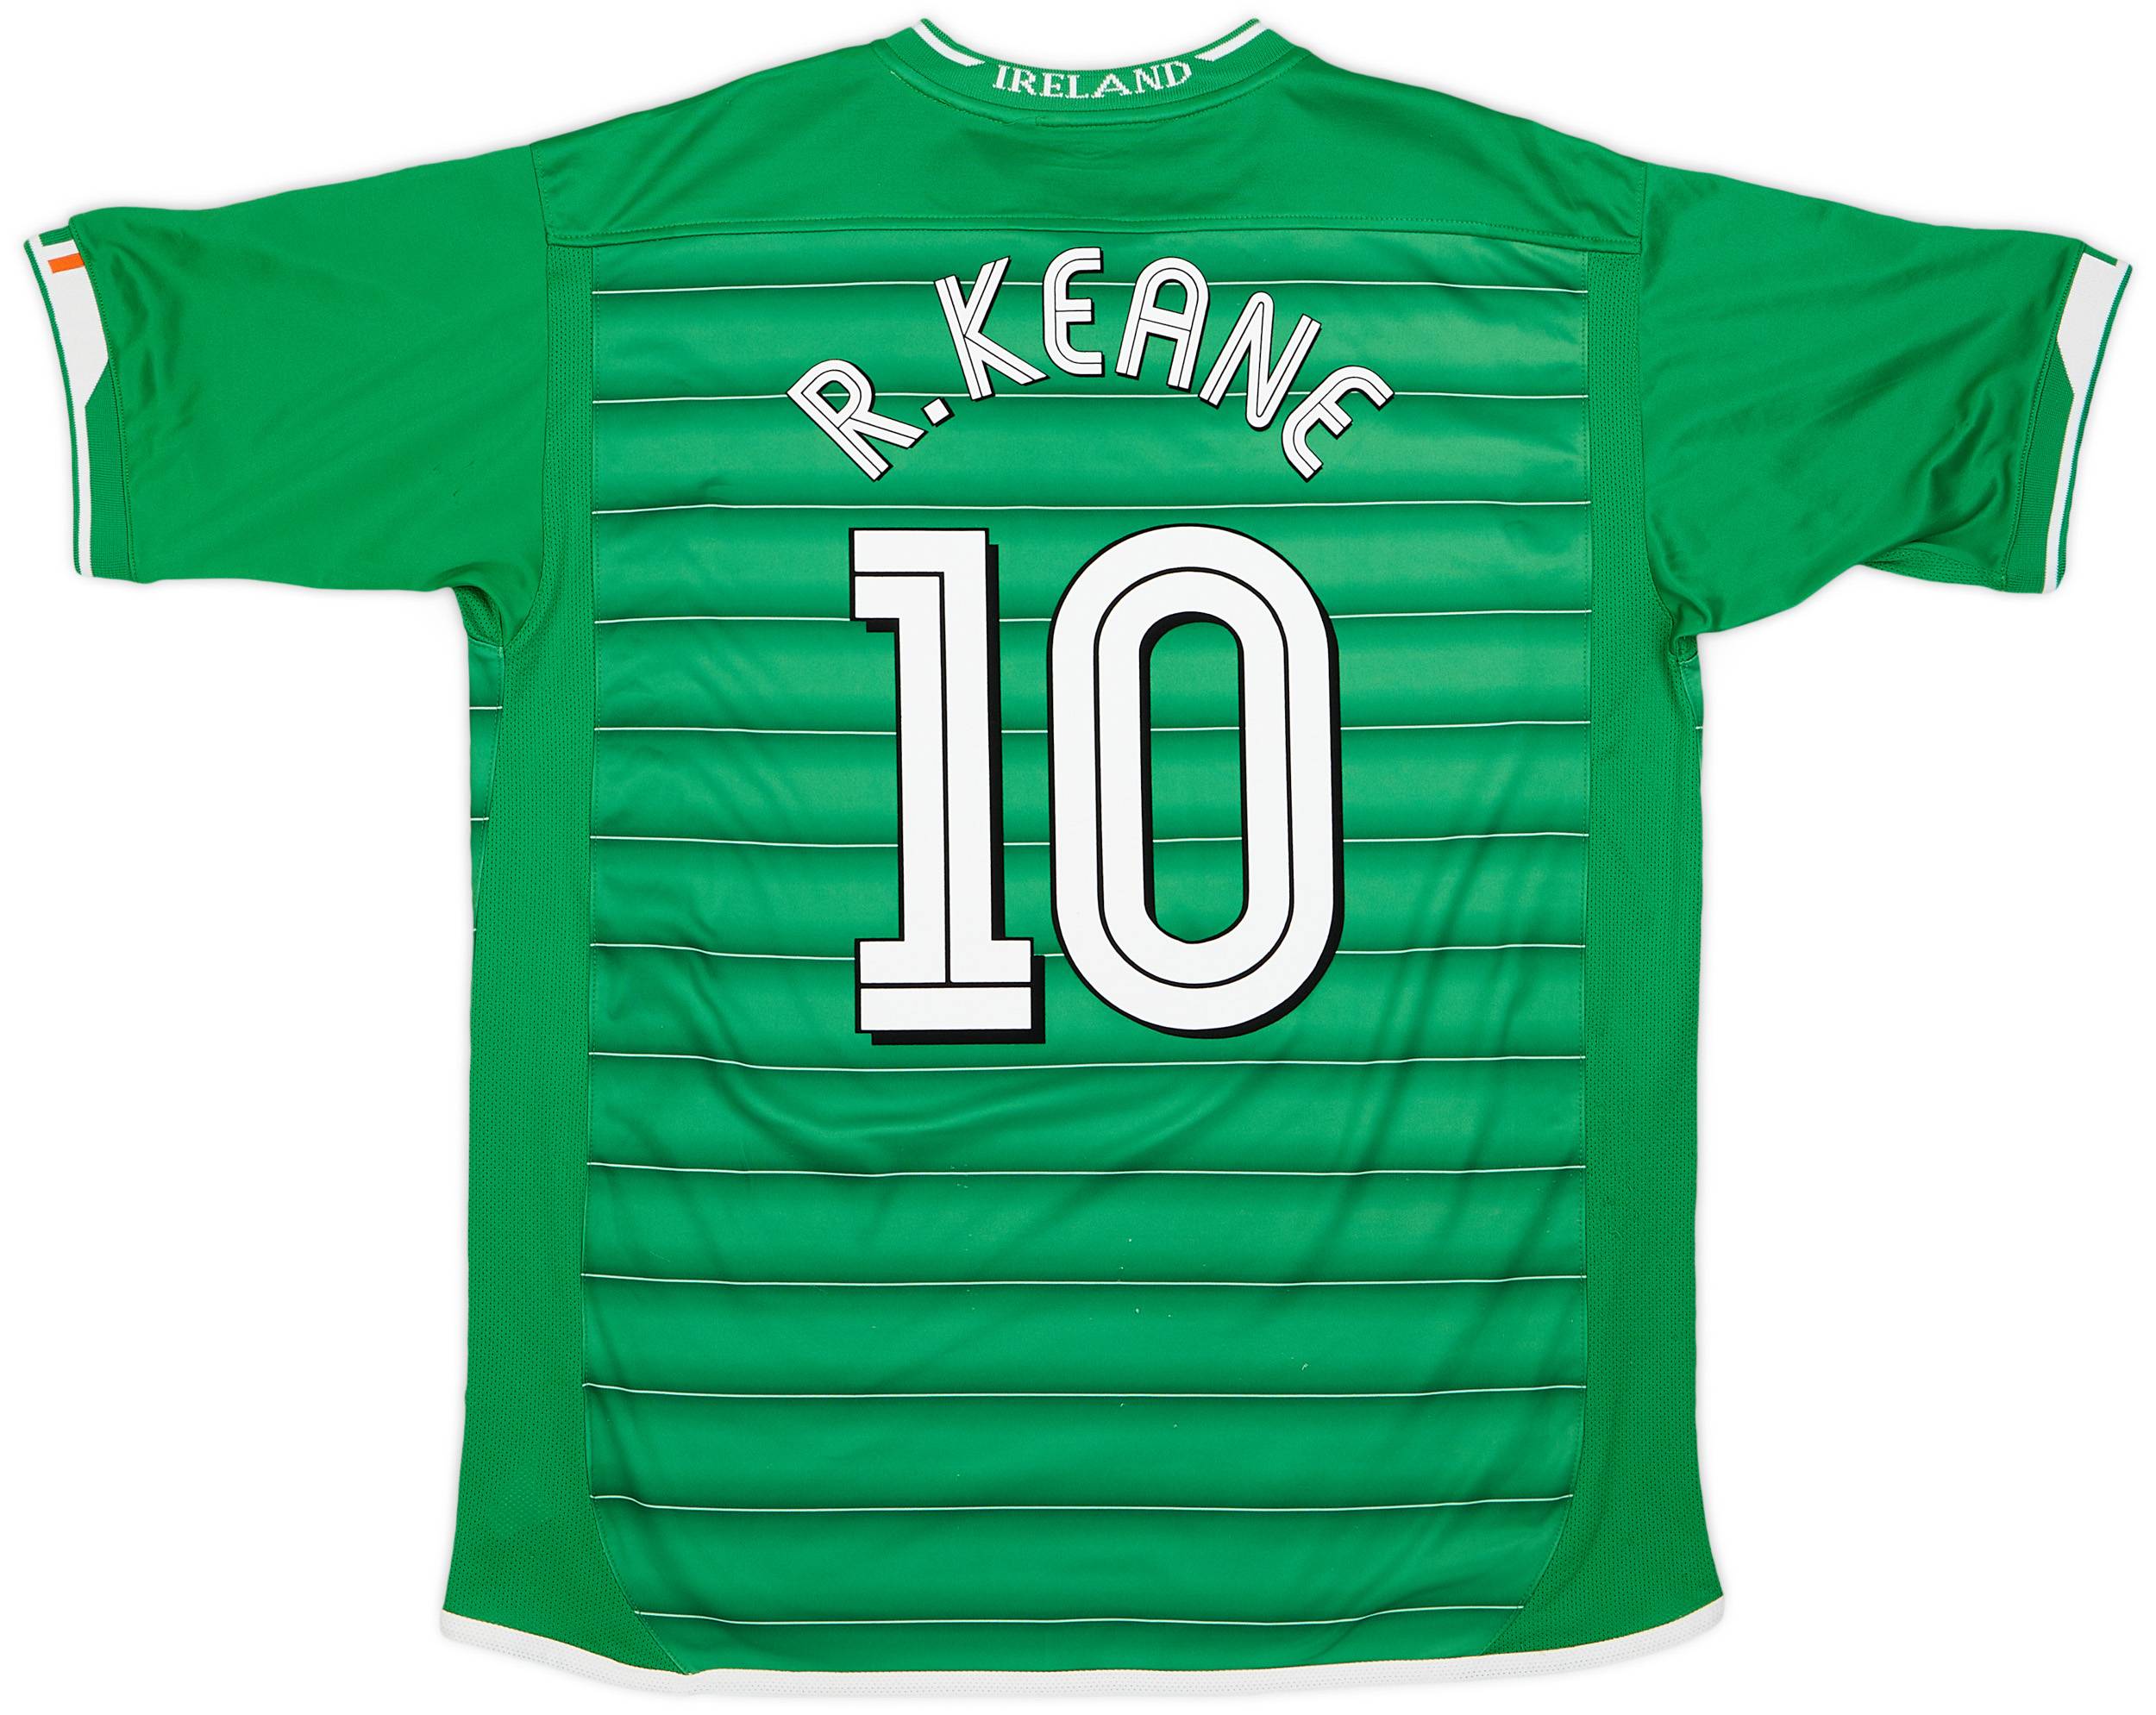 2003-04 Ireland Home Shirt R.Keane #10 - 7/10 - (XL)